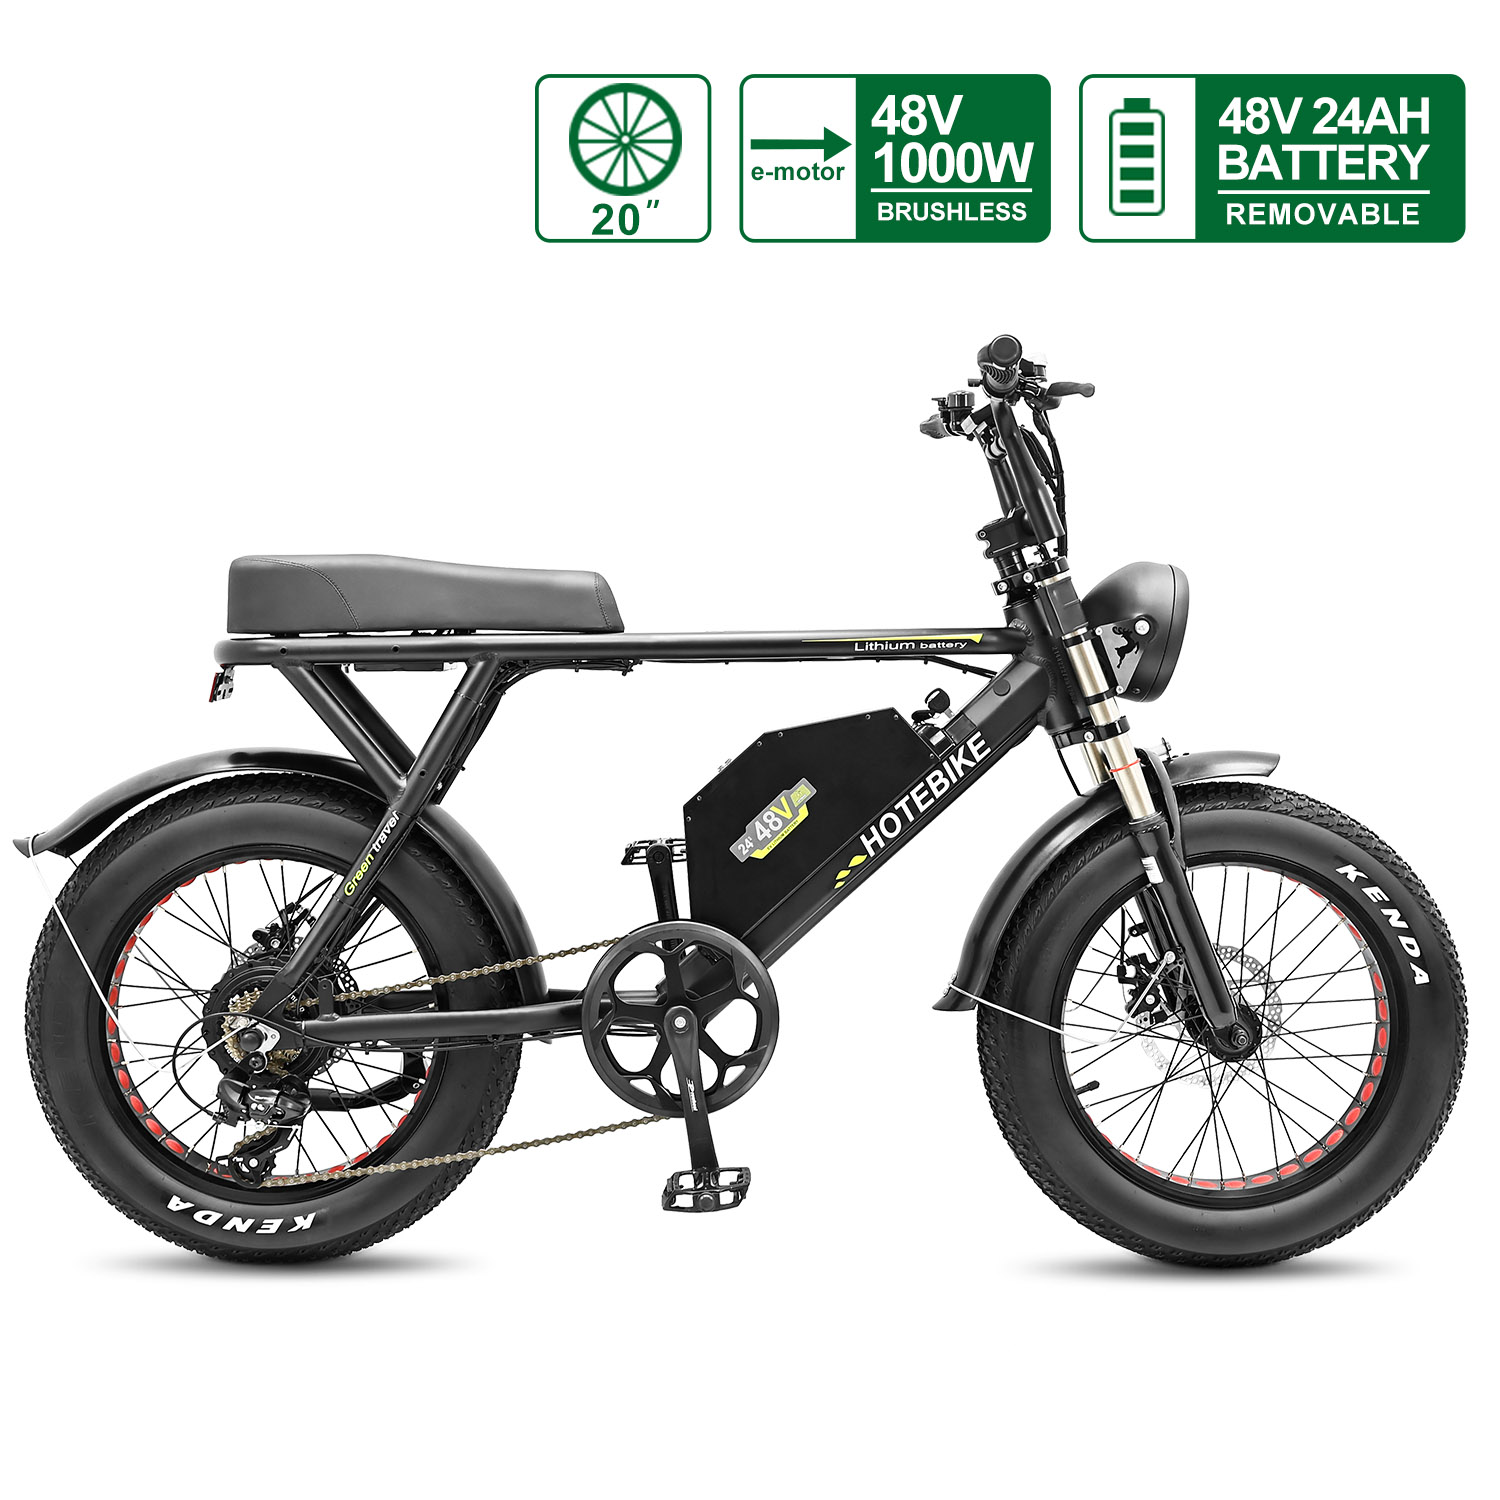 Vivi Bicicleta eléctrica, bicicleta eléctrica plegable de 20 pulgadas, 500  W, bicicleta eléctrica plegable con batería extraíble de 48 V, bicicleta